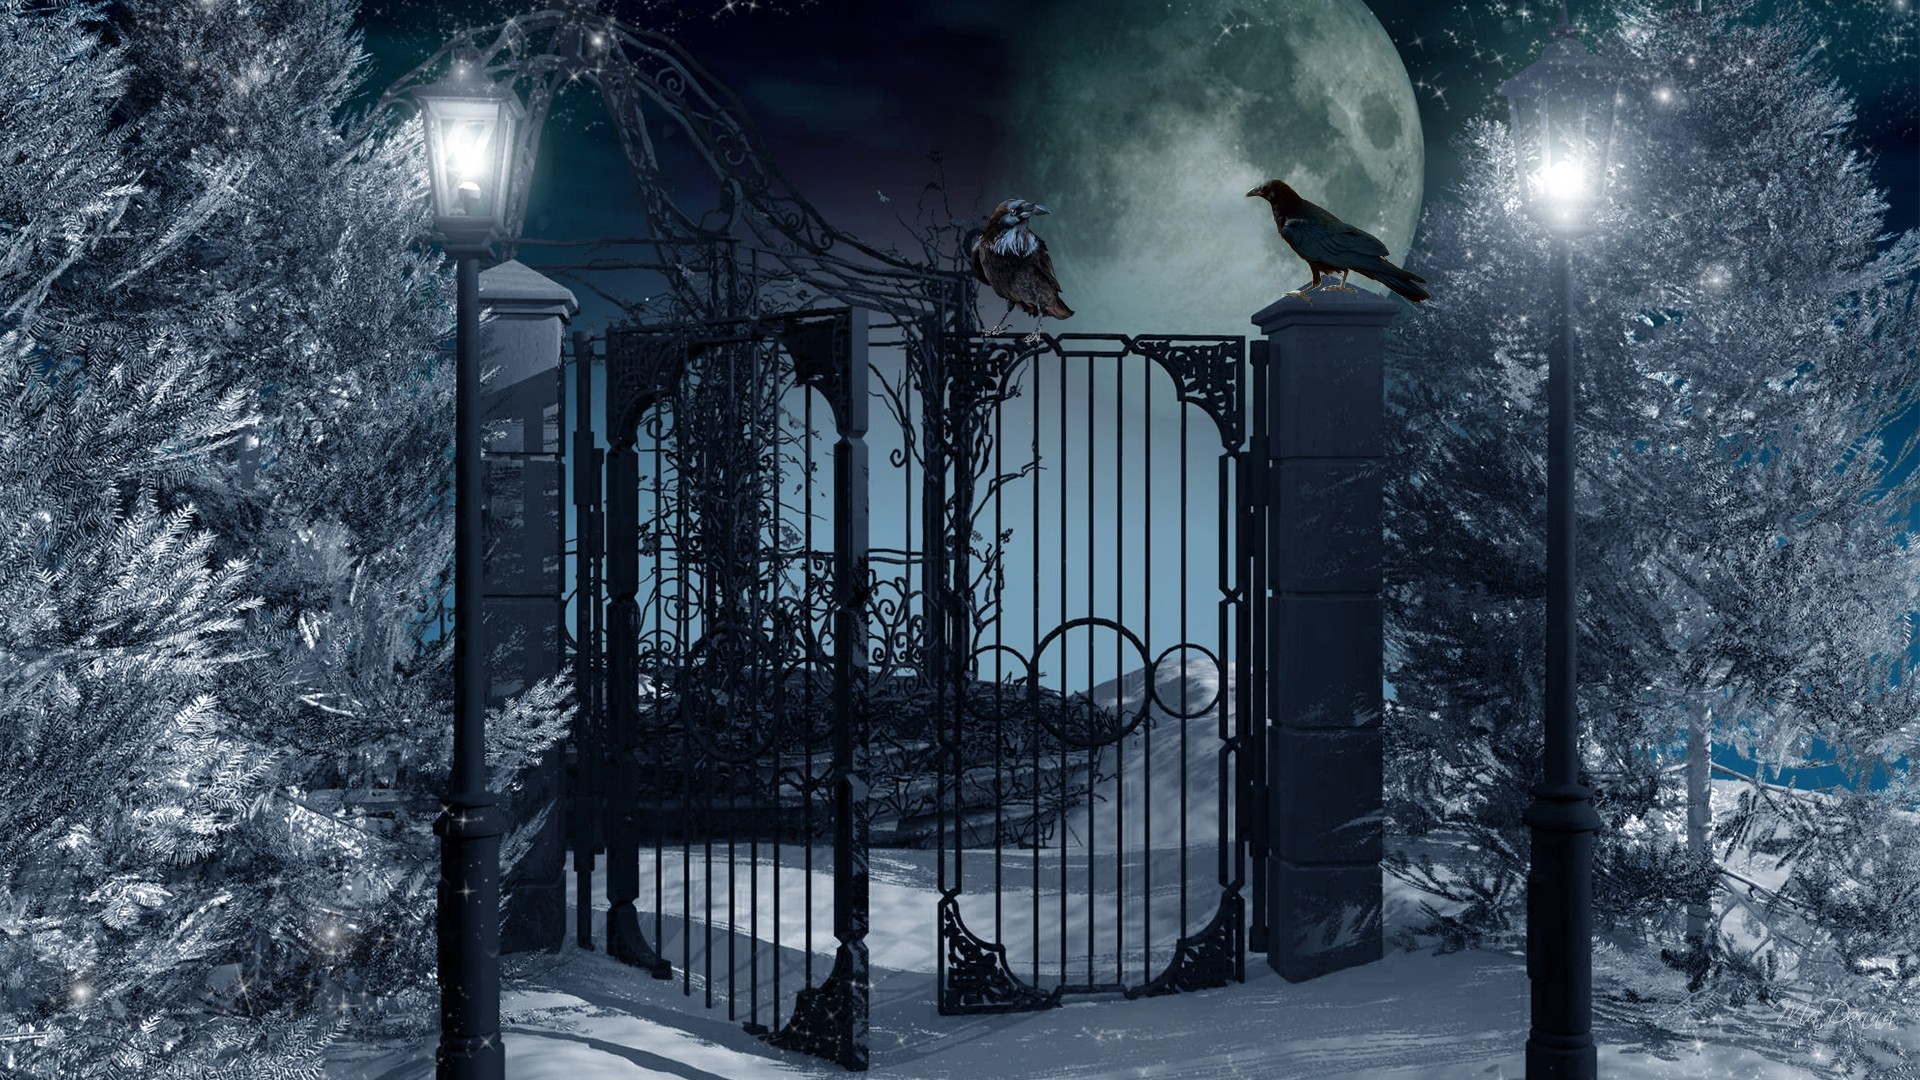 1920x1080 Full Moon on Winter Night HD Wallpaper | Hintergrund |  |  ID:680455 - Wallpaper Abyss